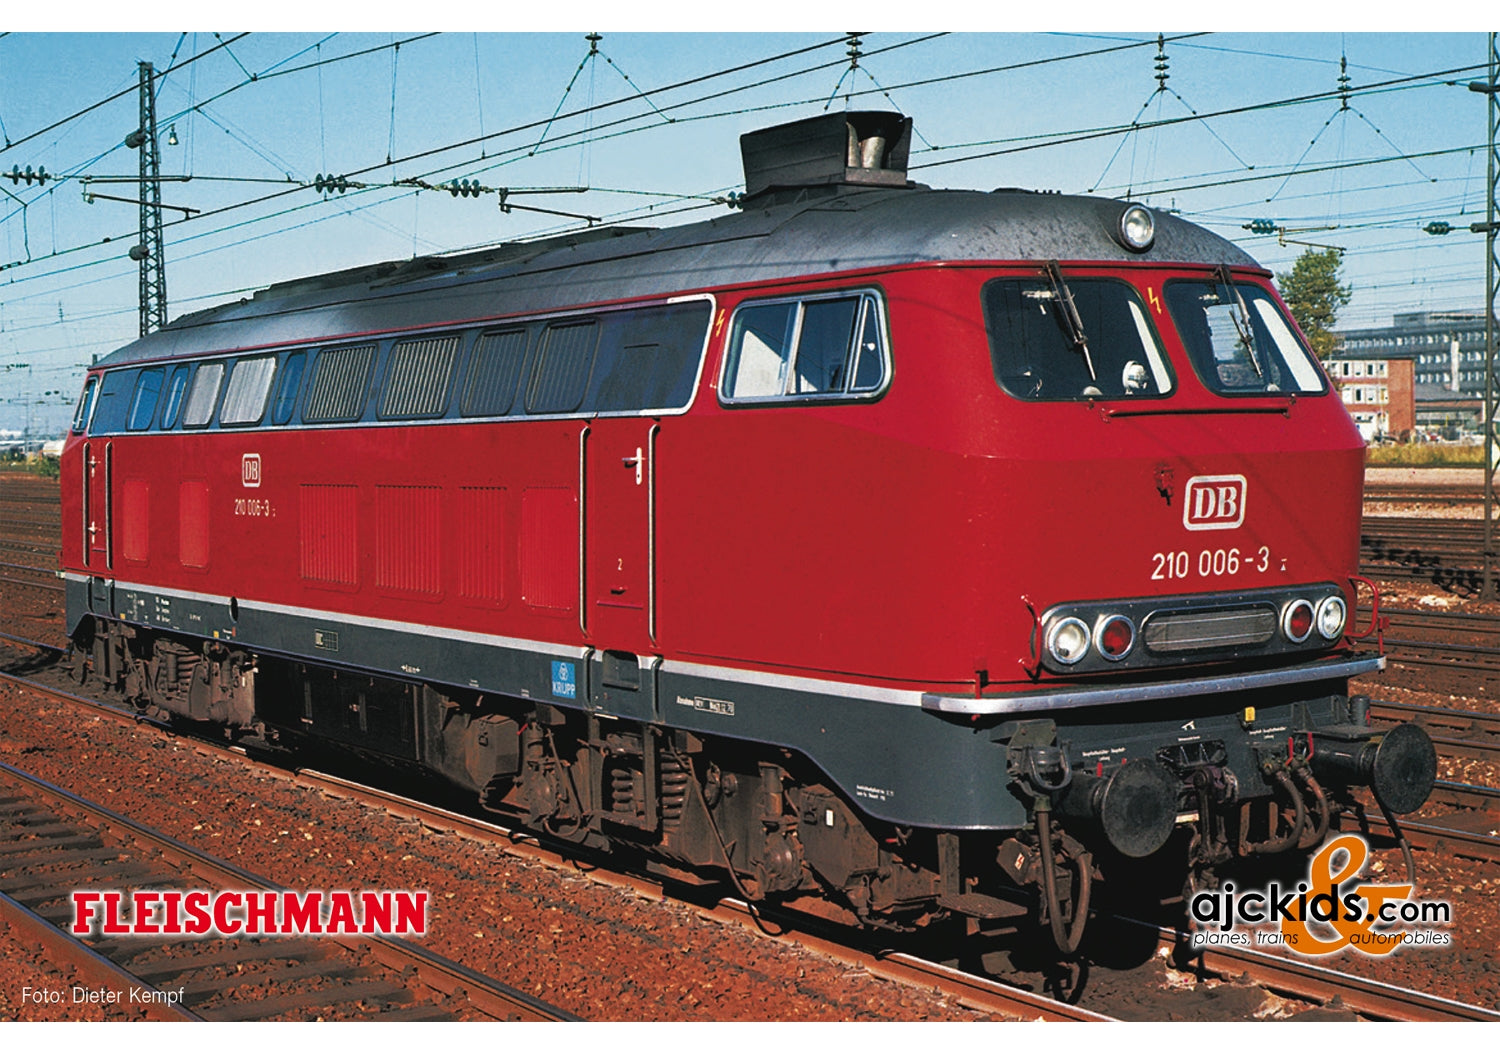 Fleischmann 724210 - Diesel locomotive class 210 with gas turbine drive